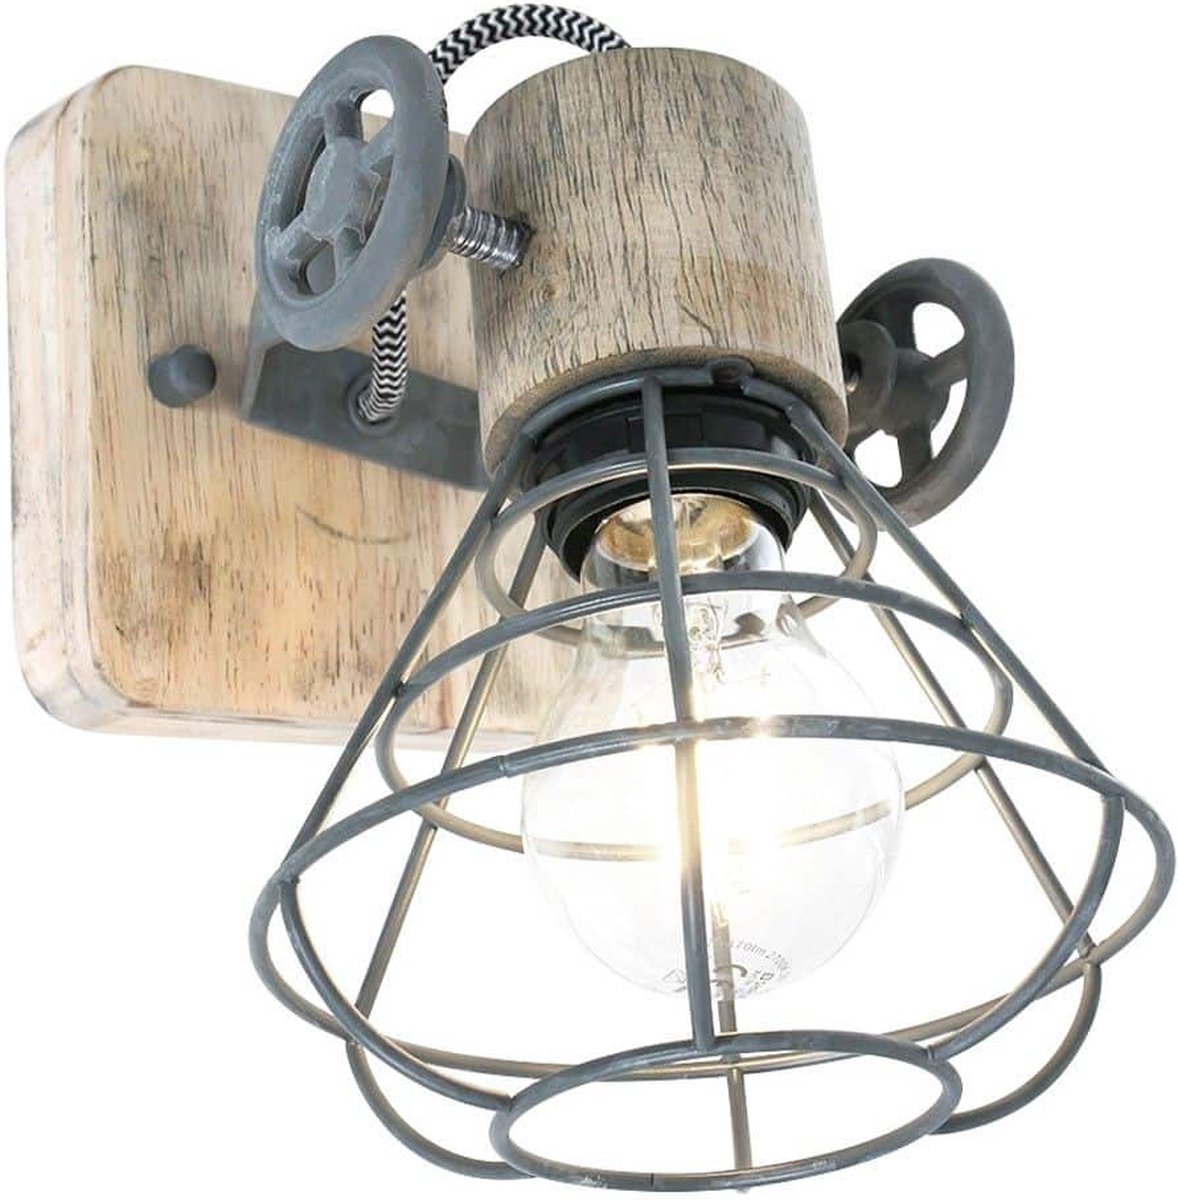 Landelijke draadspot Anne | 1 lichts | grijs / bruin | hout / metaal | Ø 14 cm | eetkamer / woonkamer / slaapkamer lamp | industrieel / modern / robuust design